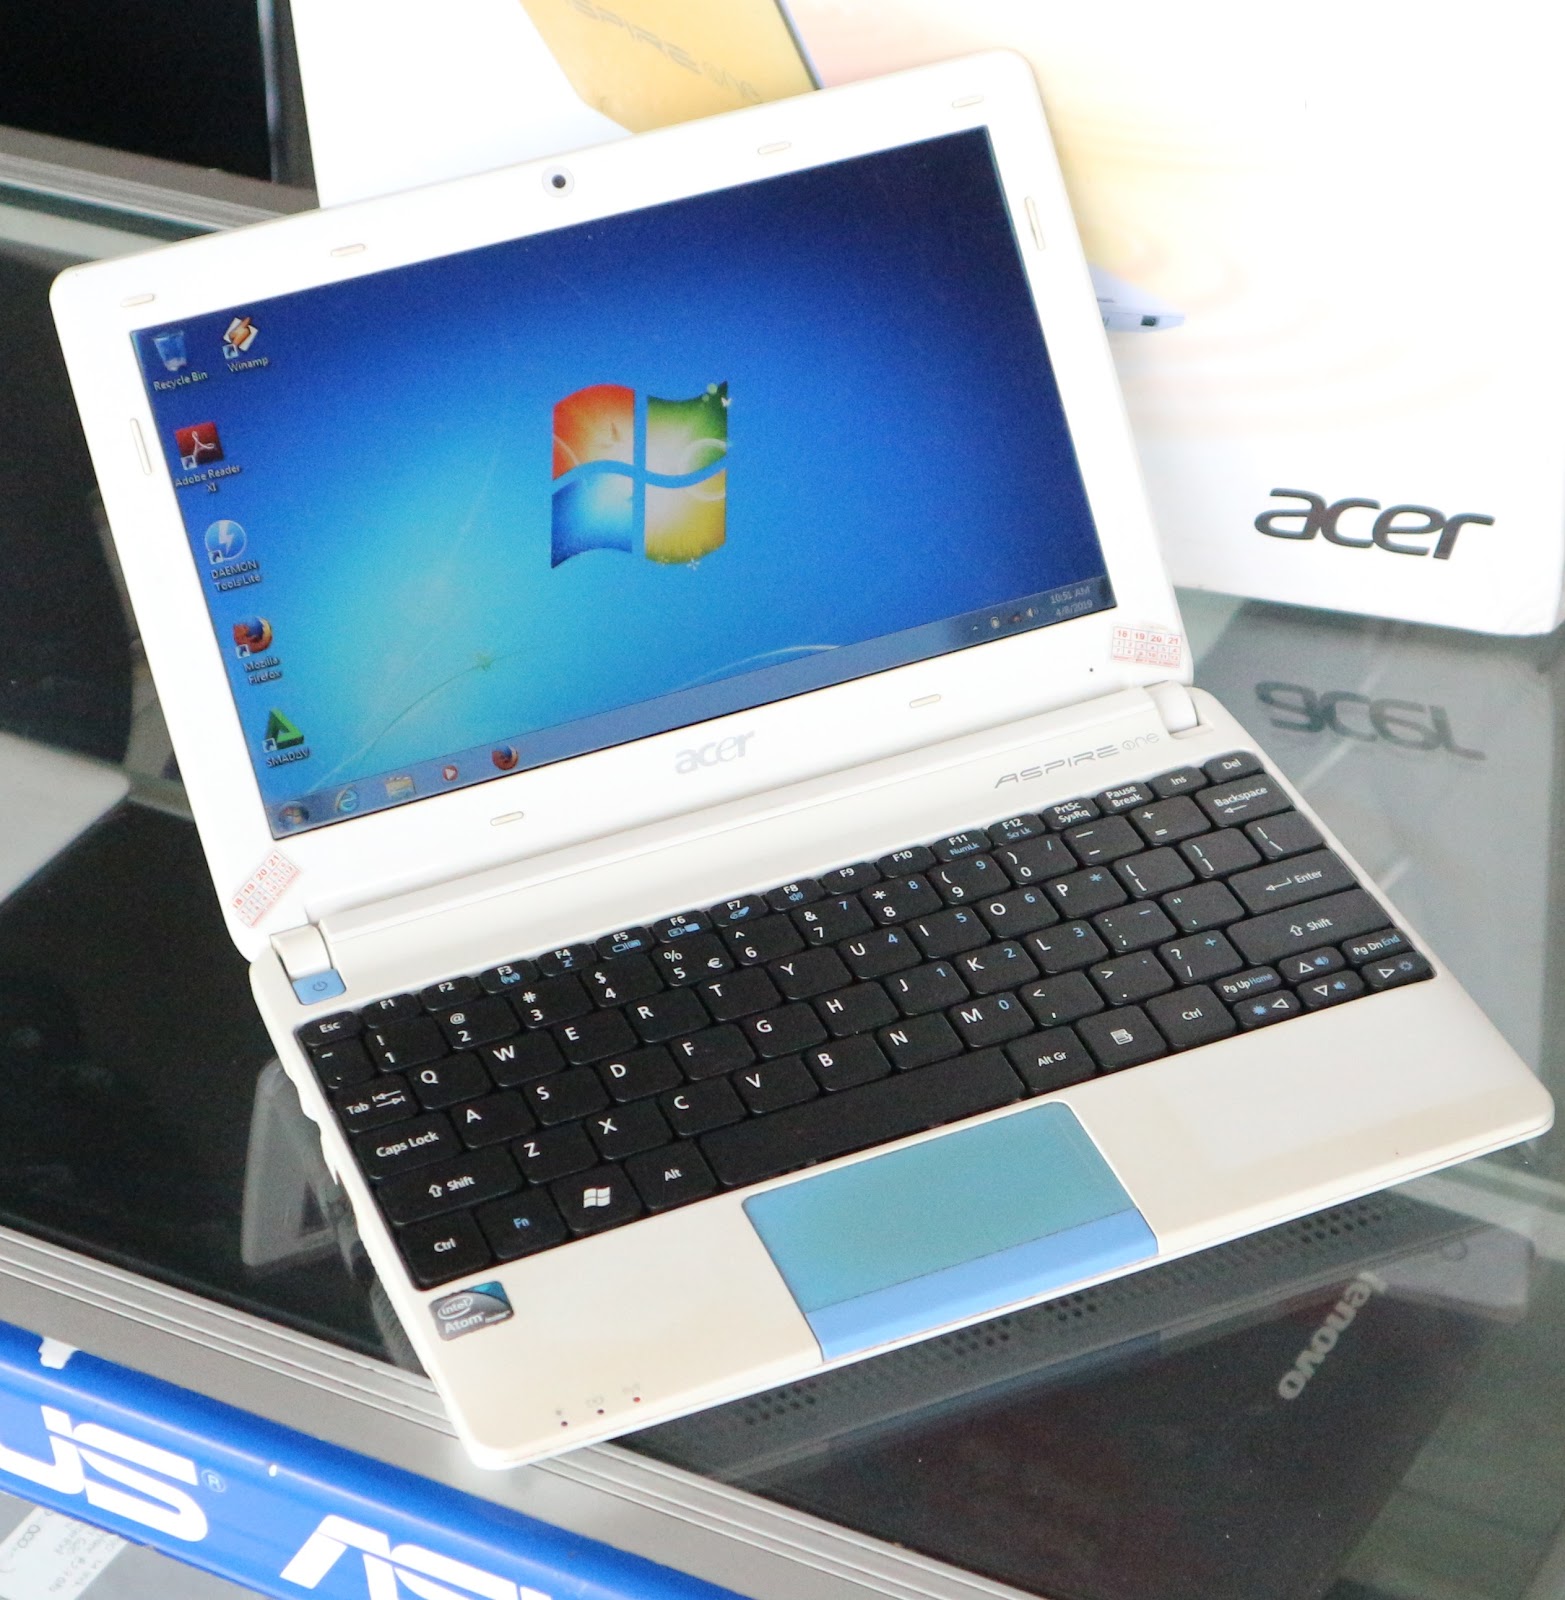 Jual Notebook Acer Aspire One Happy Second Di Malang Jual Beli Laptop Bekas Kamera Service Sparepart Di Malang